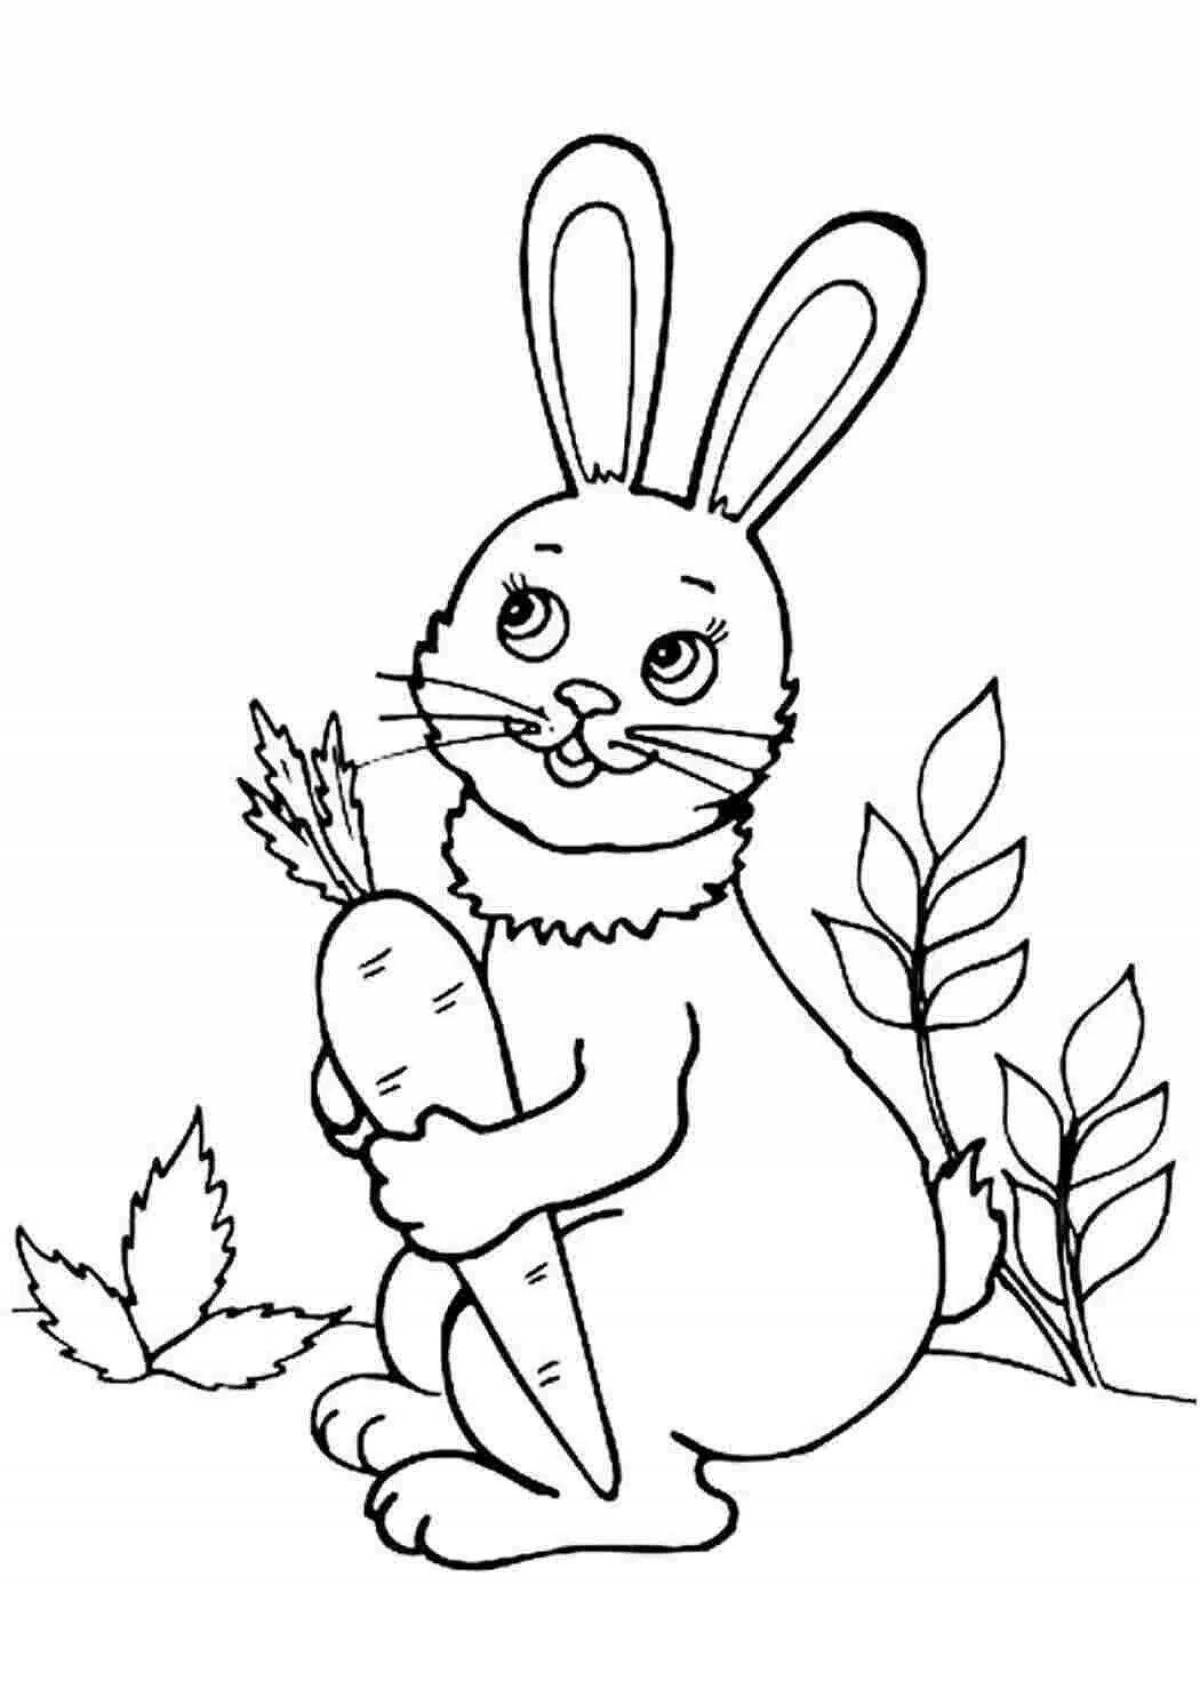 Креативный рисунок кролика для детей